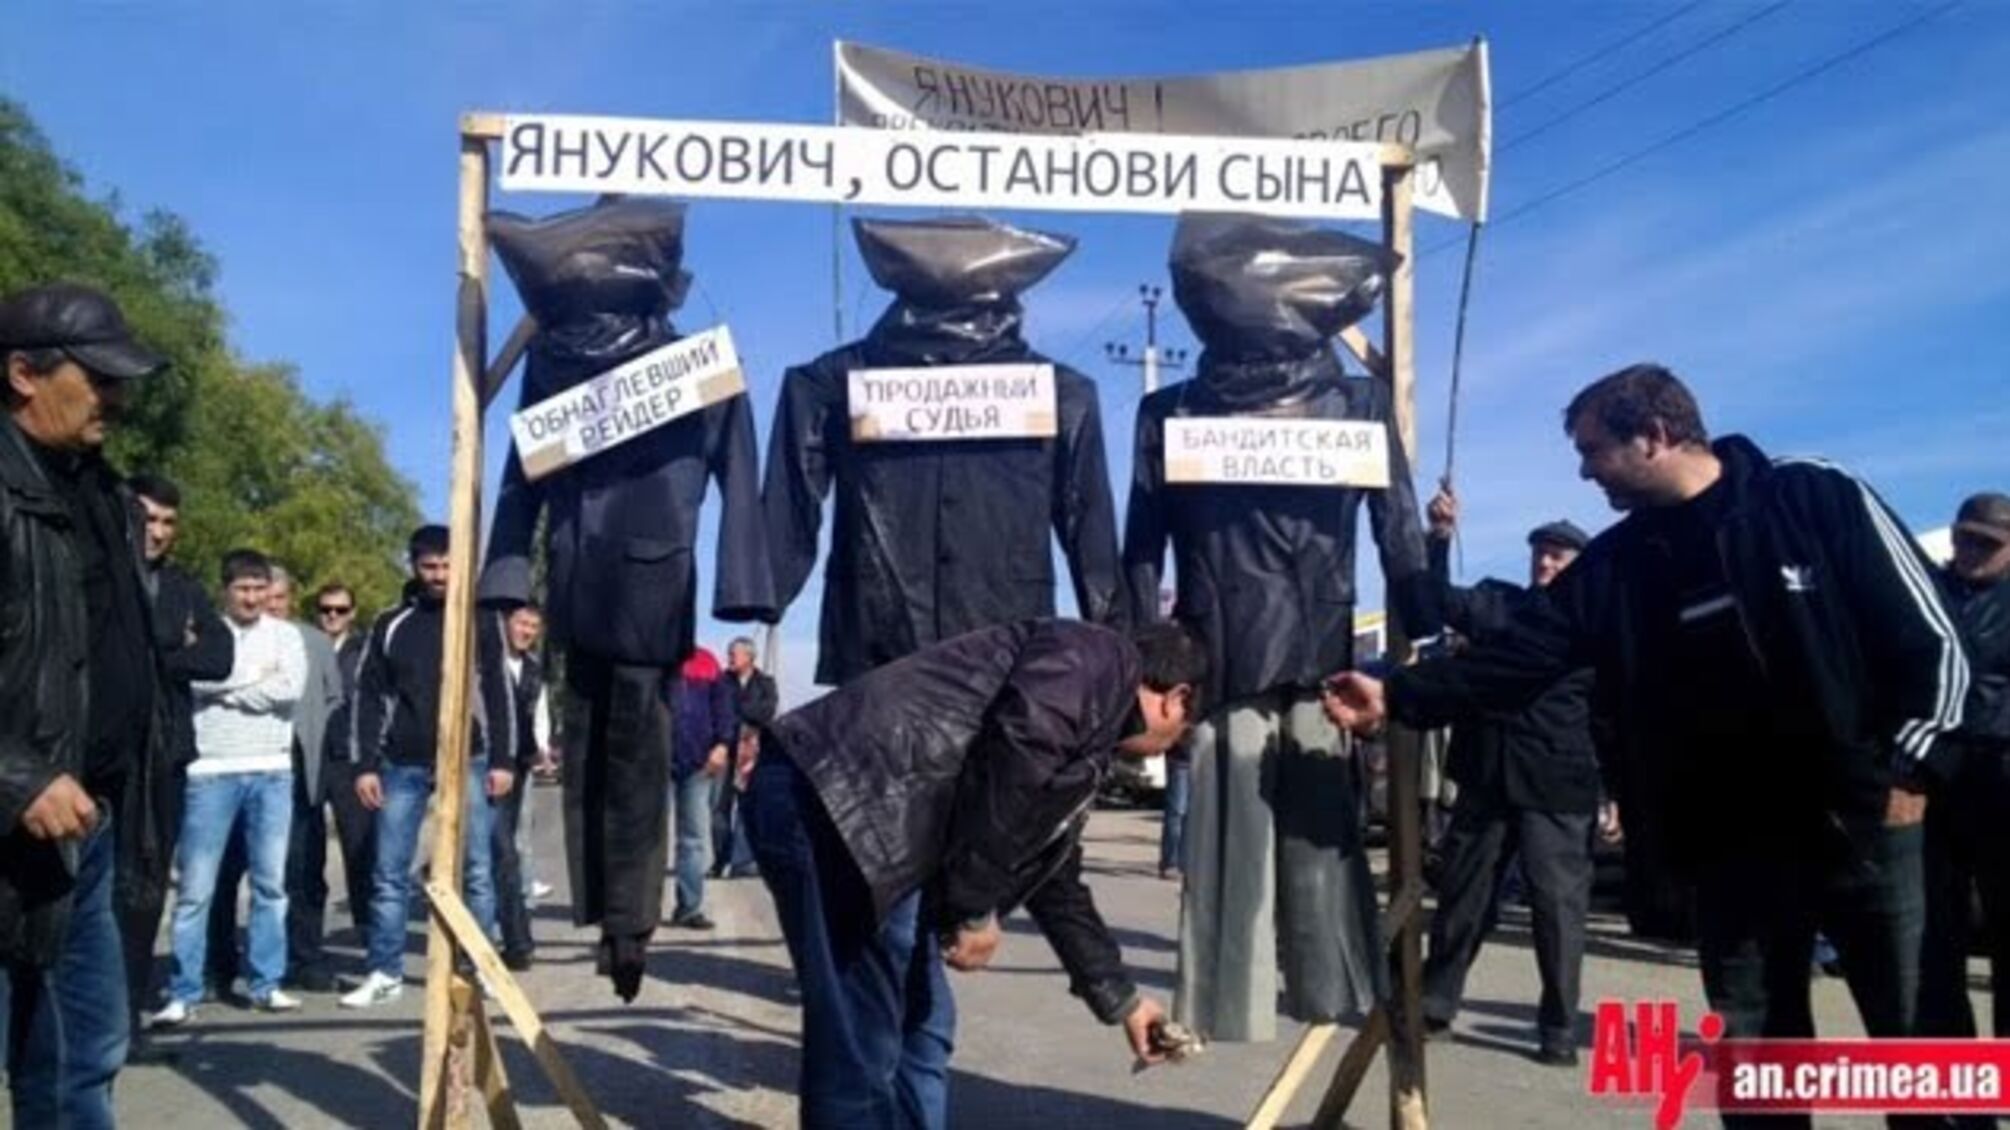 В Крыму крестьяне требуют от Януковича остановить сына